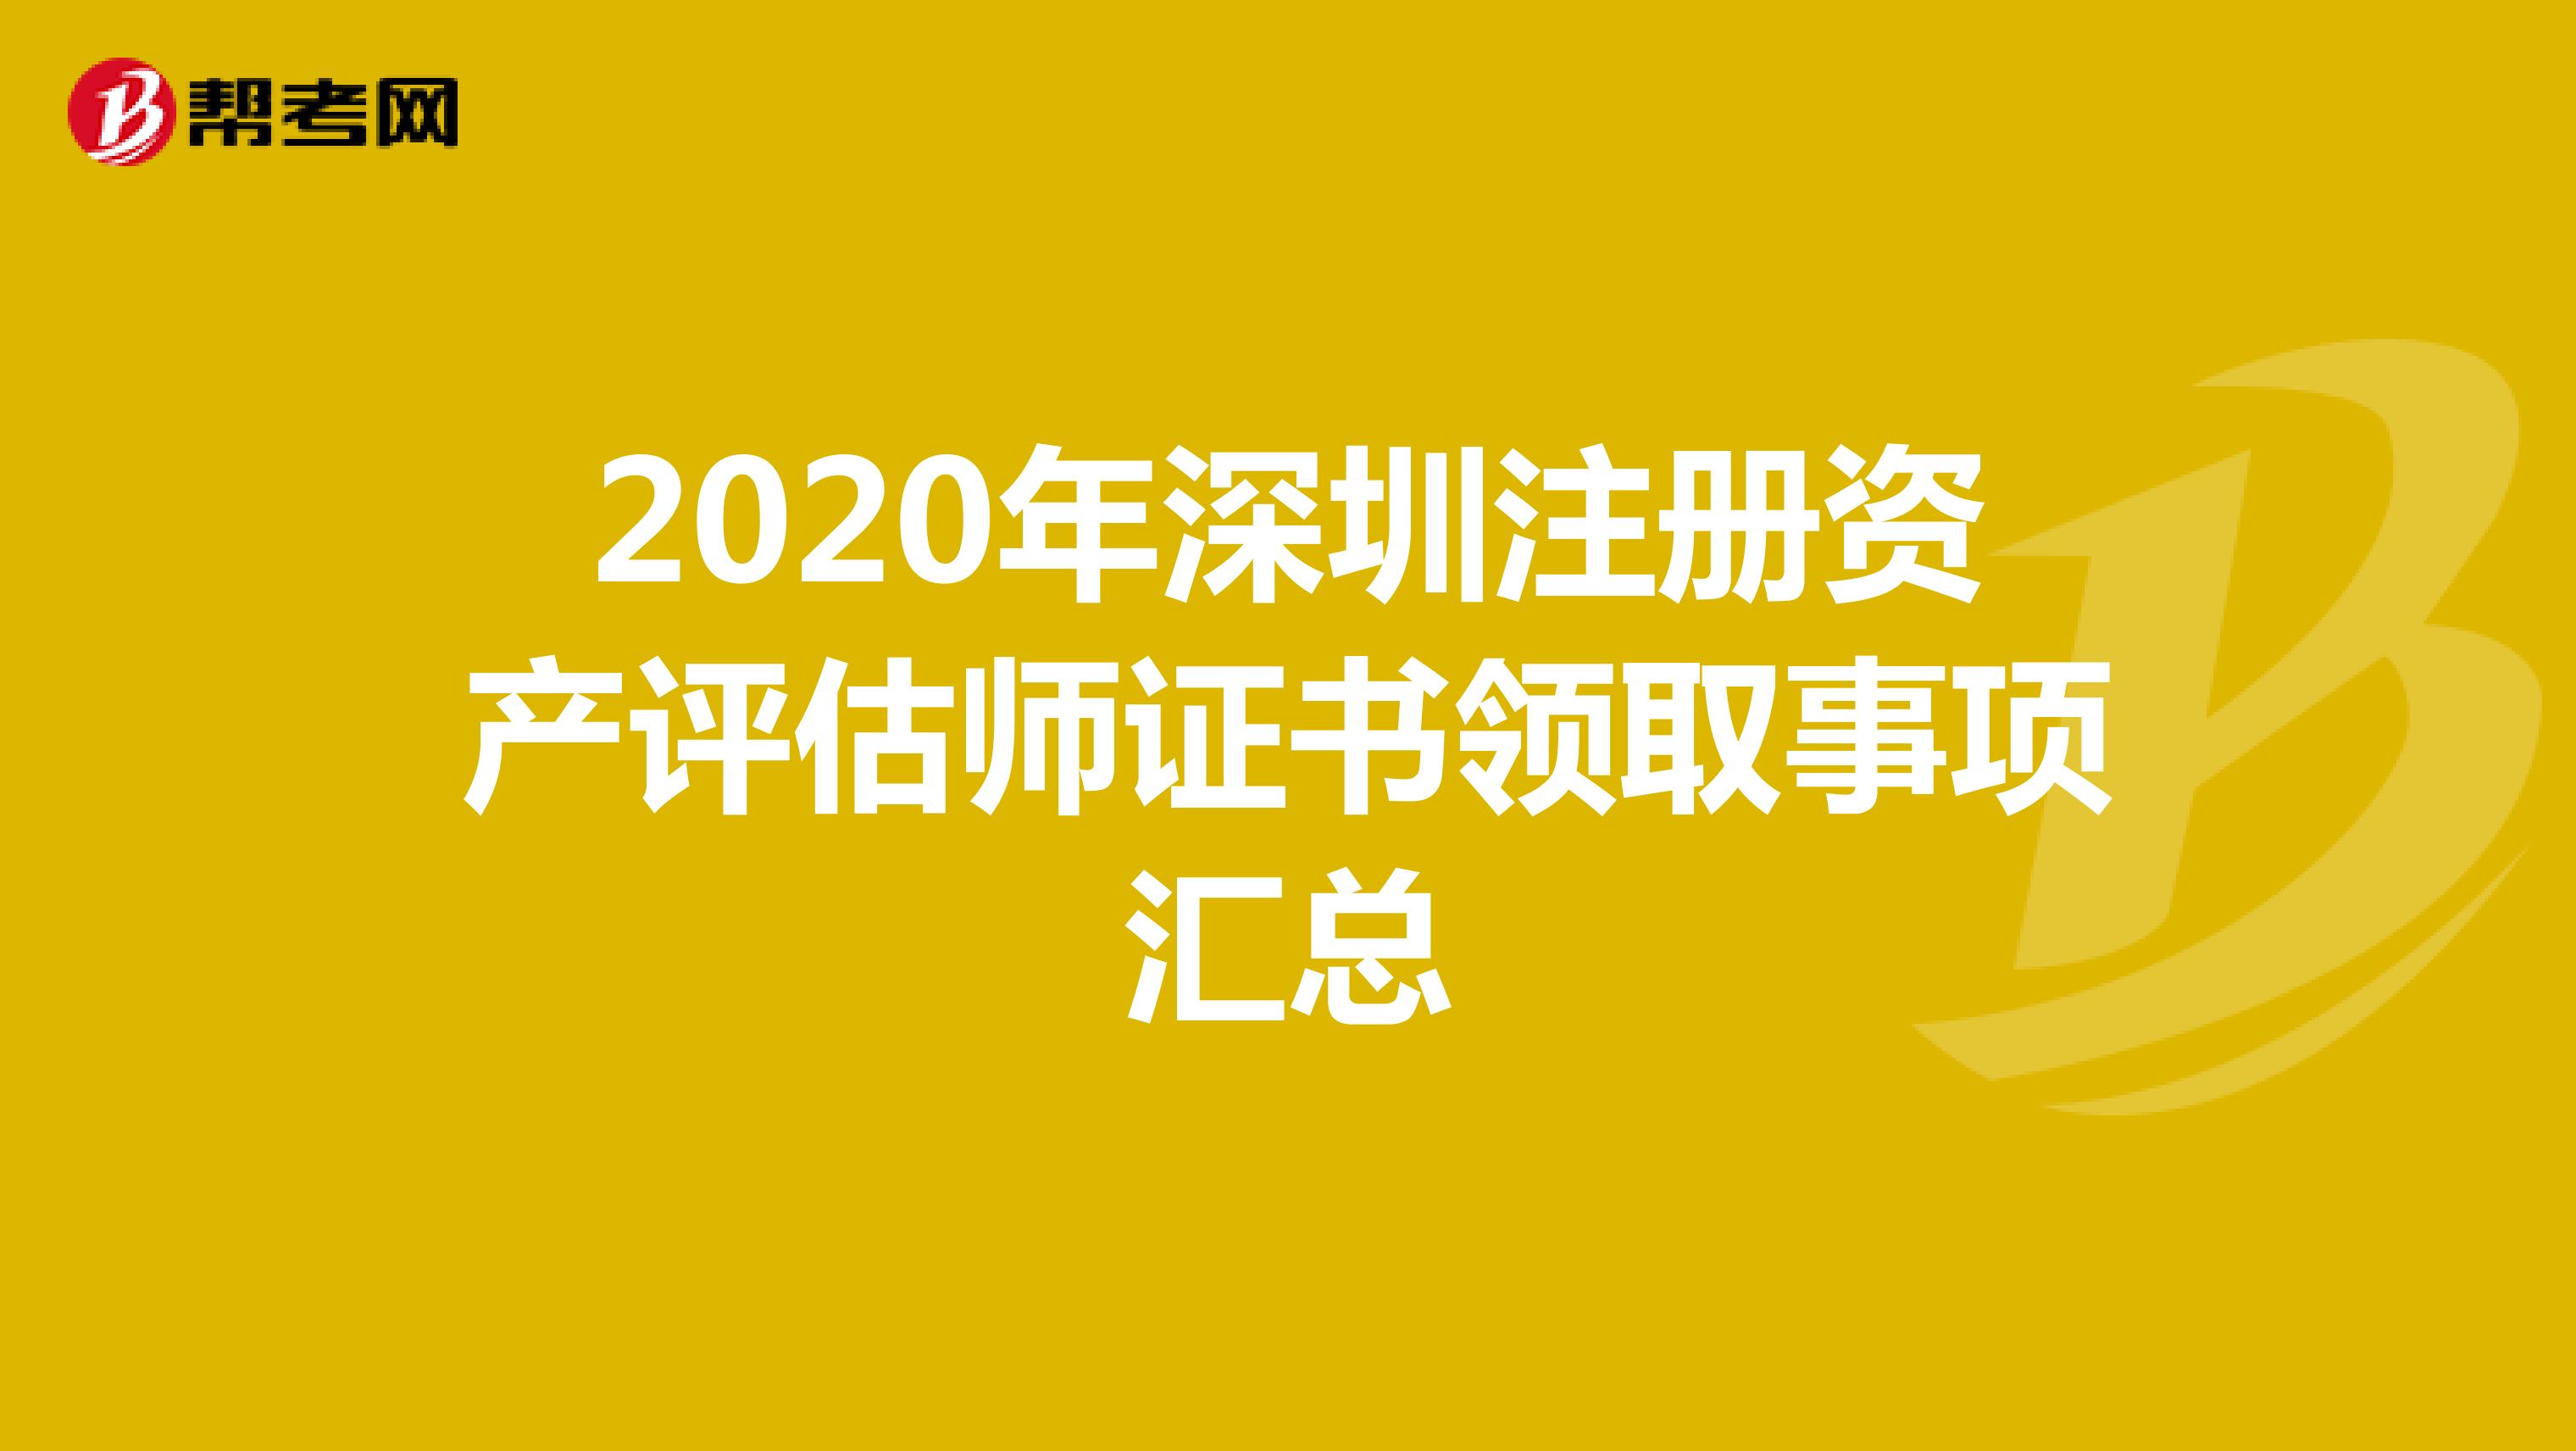 2020年深圳注册资产评估师证书领取事项汇总